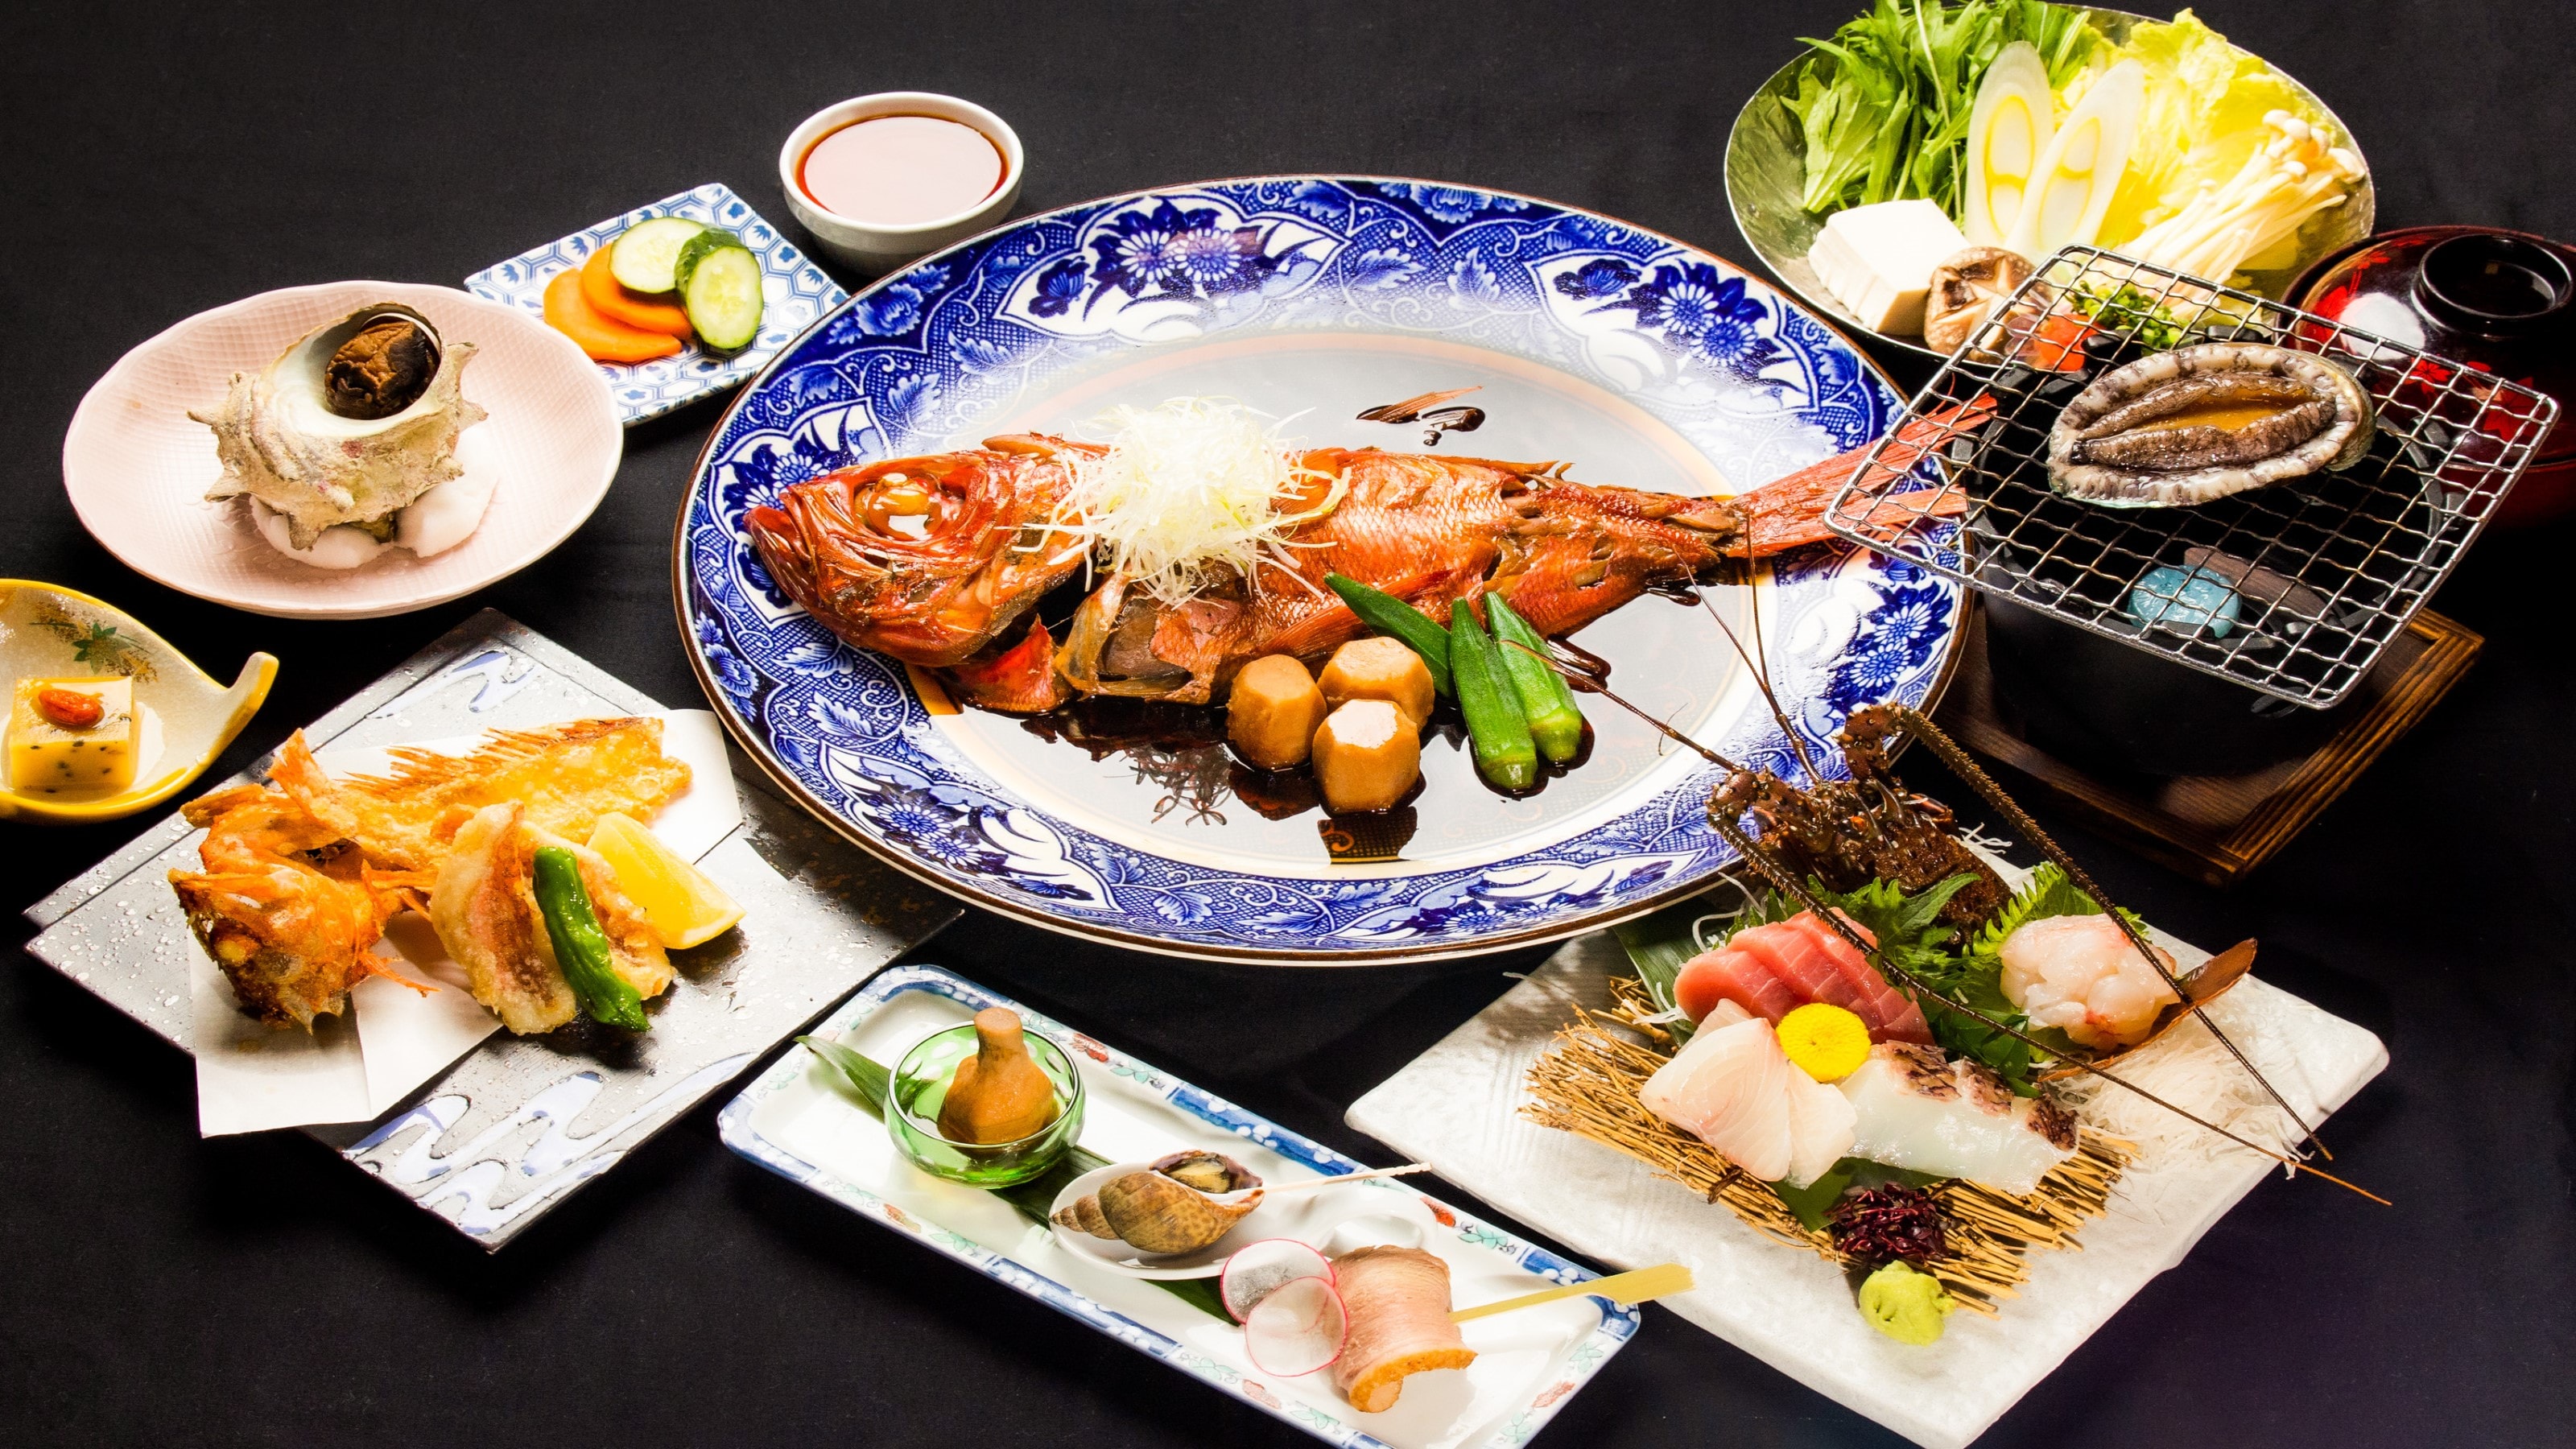 [อาหารทะเล 5 รสชาติ] เพลิดเพลินกับอาหารไคเซกิสุดหรู เช่น ปลากระพง หอยเป๋าฮื้อ กุ้งมังกร เปลือกโพกหัว และปลาแมงป่อง